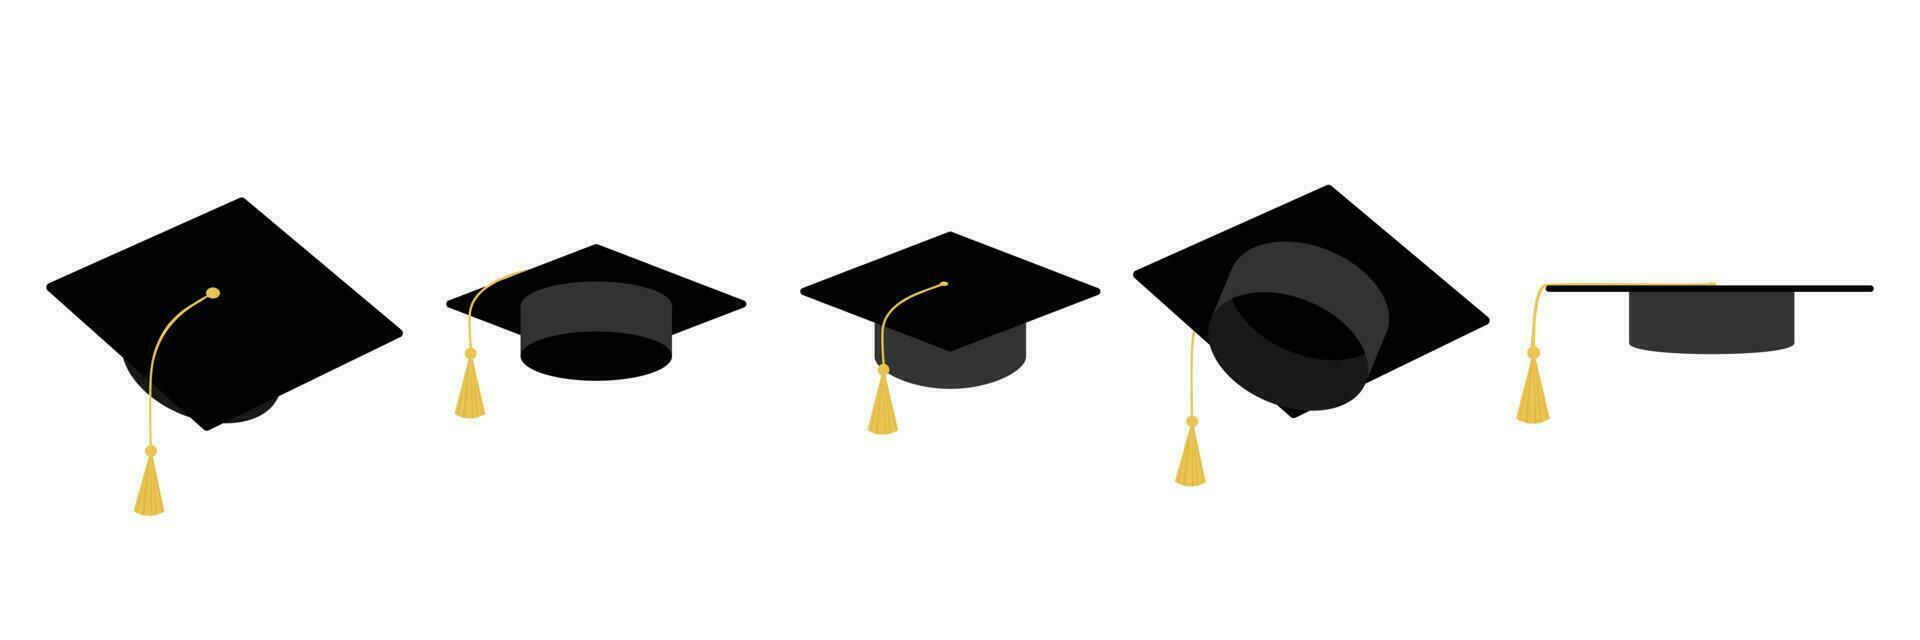 verzameling van diploma uitreiking hoed. diploma uitreiking pet icoon, Universiteit of college diploma uitreiking hoed logo, leerling diploma uitreiking pet diploma, vector illustratie